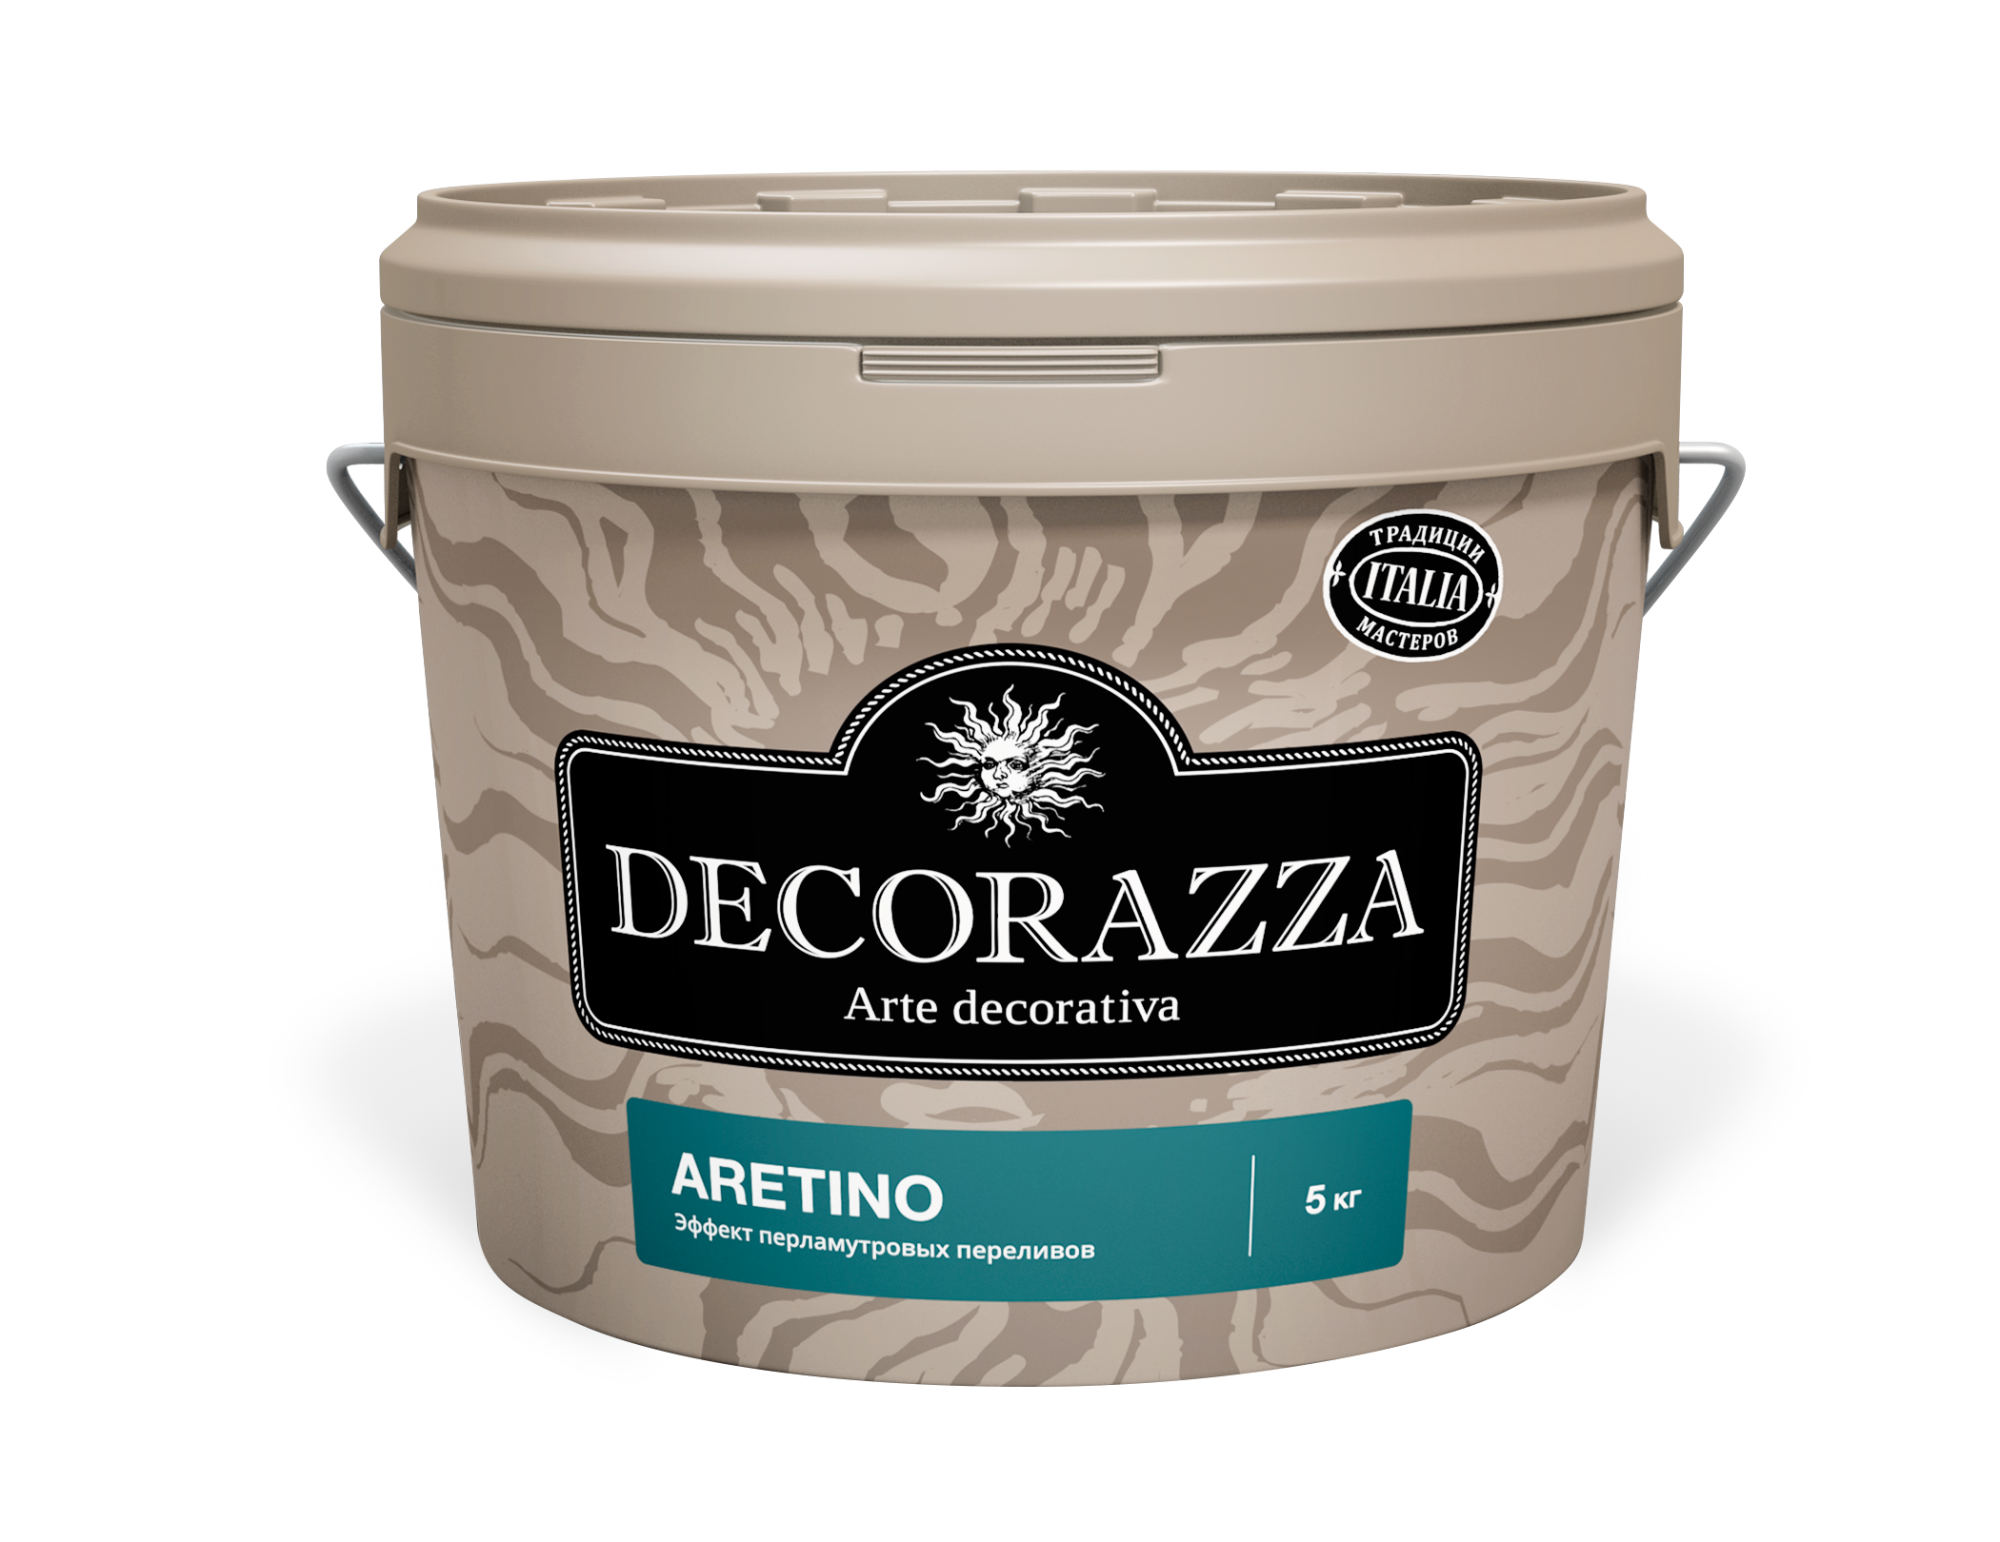 Decorazza ARETINO / Аретино Декоративная краска с перламутровым эффектом и добавлением мелкофракционного наполнителя 5кг